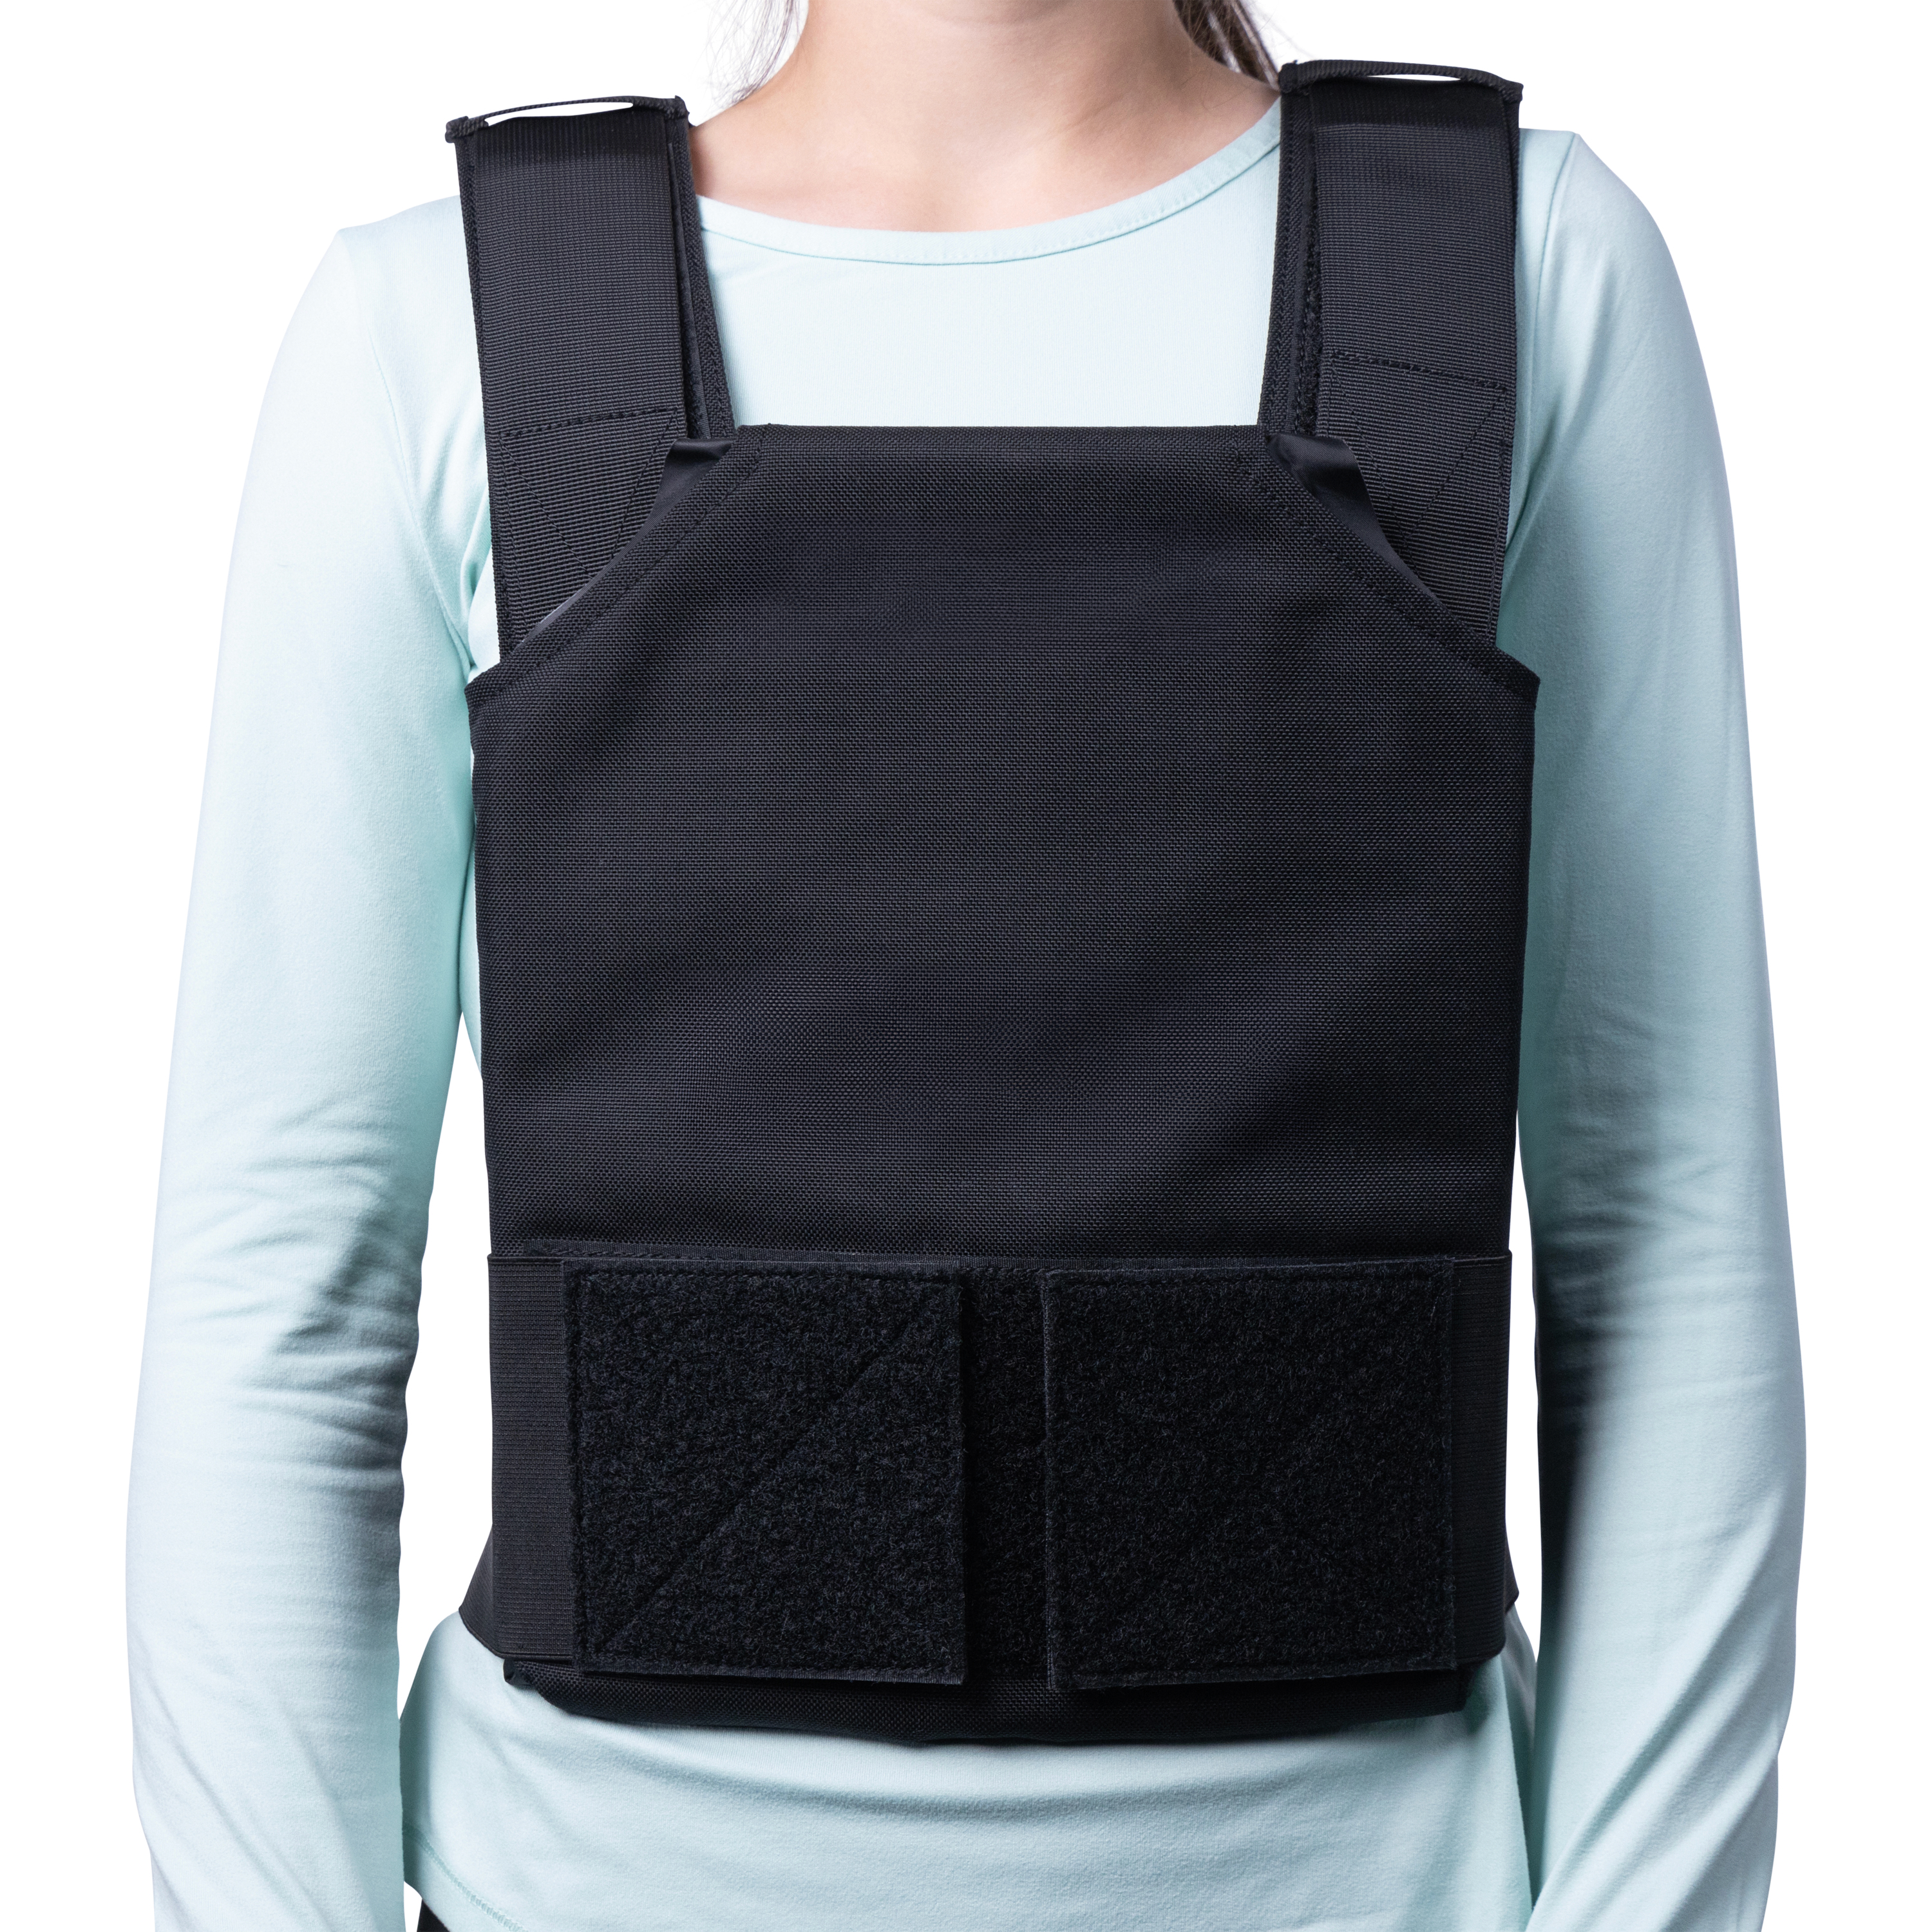 ProtectVest® Covert - Children's Emergency Bulletproof Vest / Body Armor for Kids